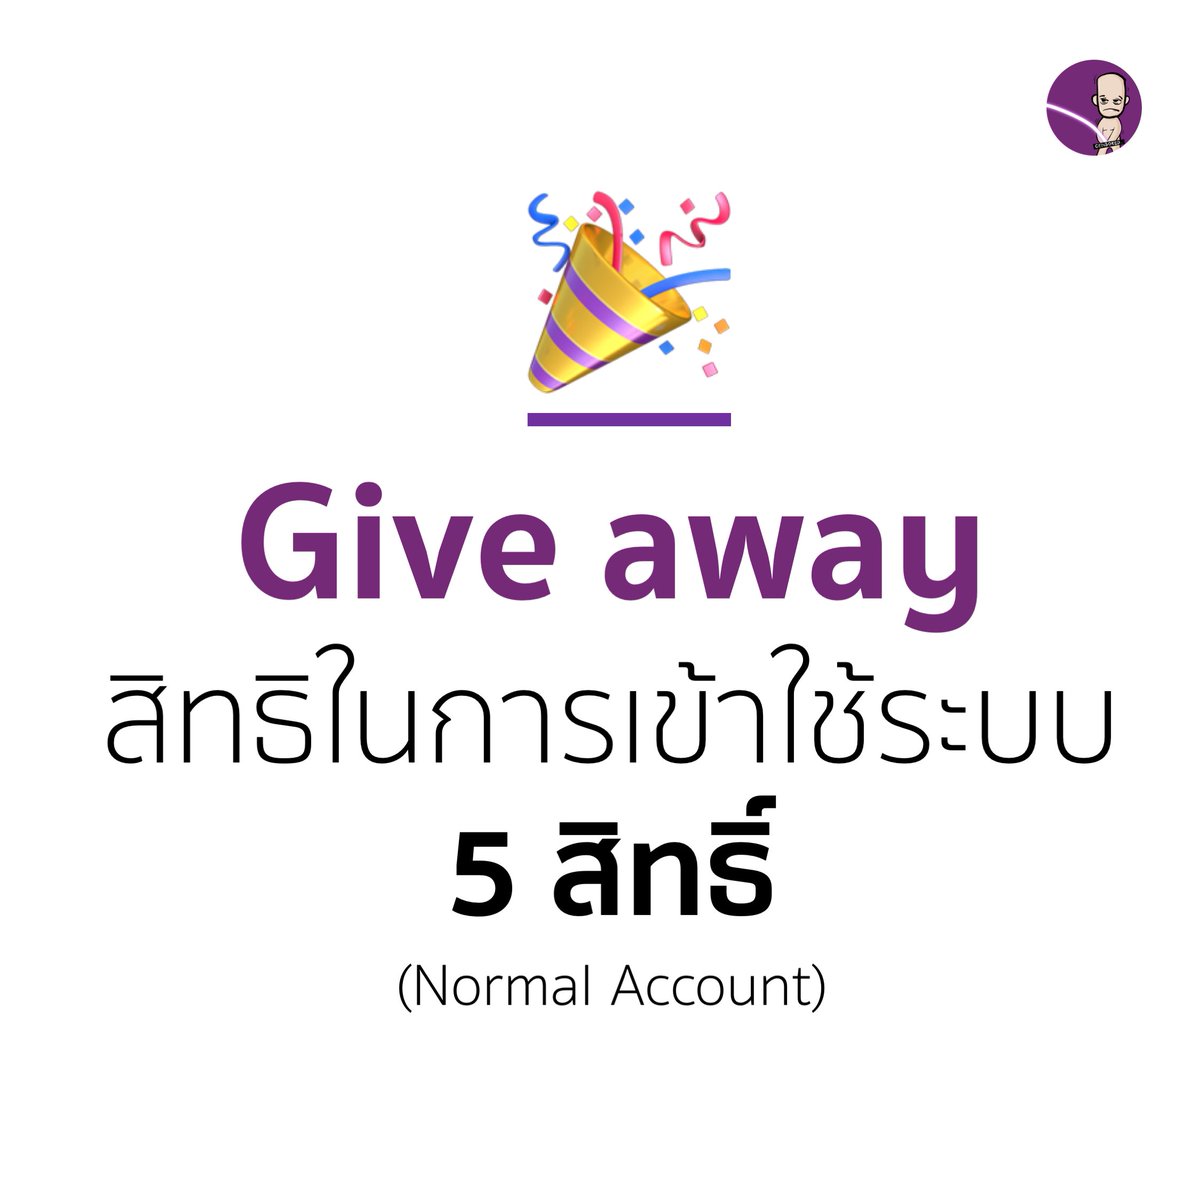 วันนี้ผมอยากขอสวัสดีปีใหม่ไทย และอยากมอบส่งดีๆให้คอมมู NFT Thai บน Paras (ก่อน) นะครับ จะแจกสิทธิเข้าใช้งานระบบ จำนวน 5 สิทธิ์ครับ (ไม่มีแจกบ่อยแน่นอน) เชิญที่ Discord #ไอ้ชิ้ง นะครับ Join us & Enjoy your Ching discord.gg/smPTeJjmkR #NEARcollector #NFTTHAILAND #parashq